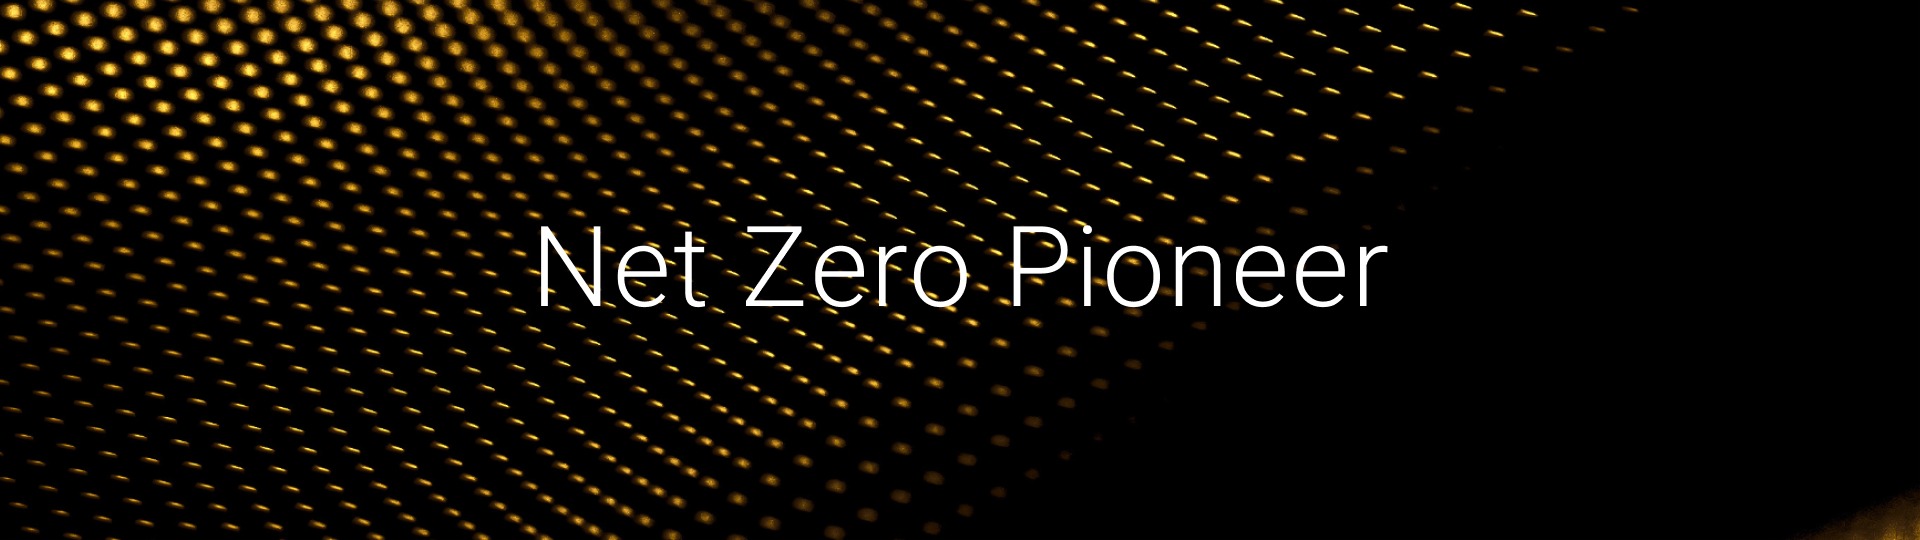 Net Zero Pioneer